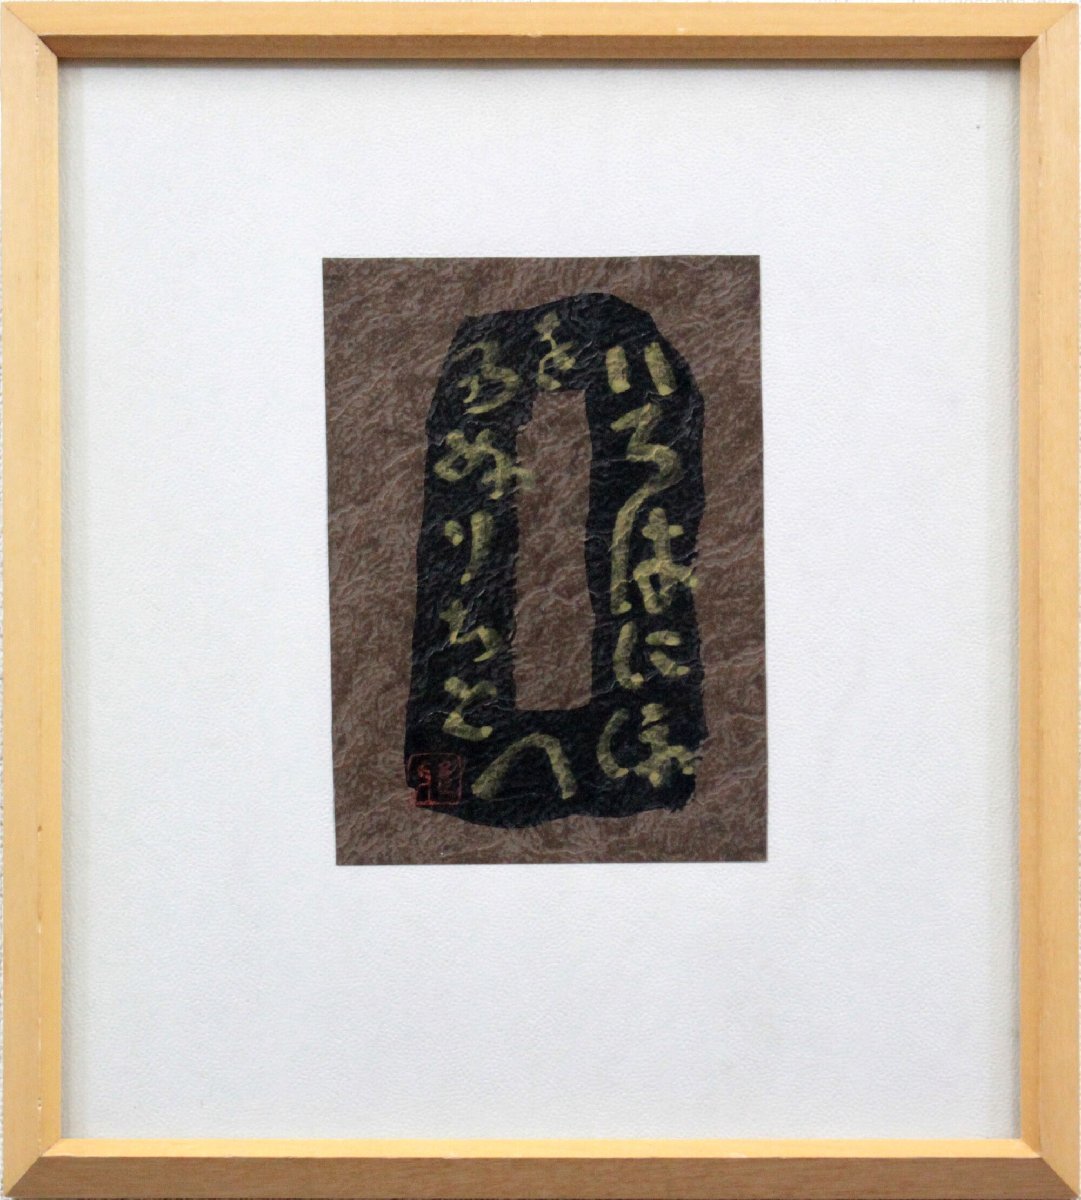 हिगुची मासायामाबो इरोहा नी होहे तो चिरिनुरु वो हाथ से पेंट की गई [प्रामाणिक गारंटी] पेंटिंग - होक्काइडो गैलरी, कलाकृति, किताब, अन्य